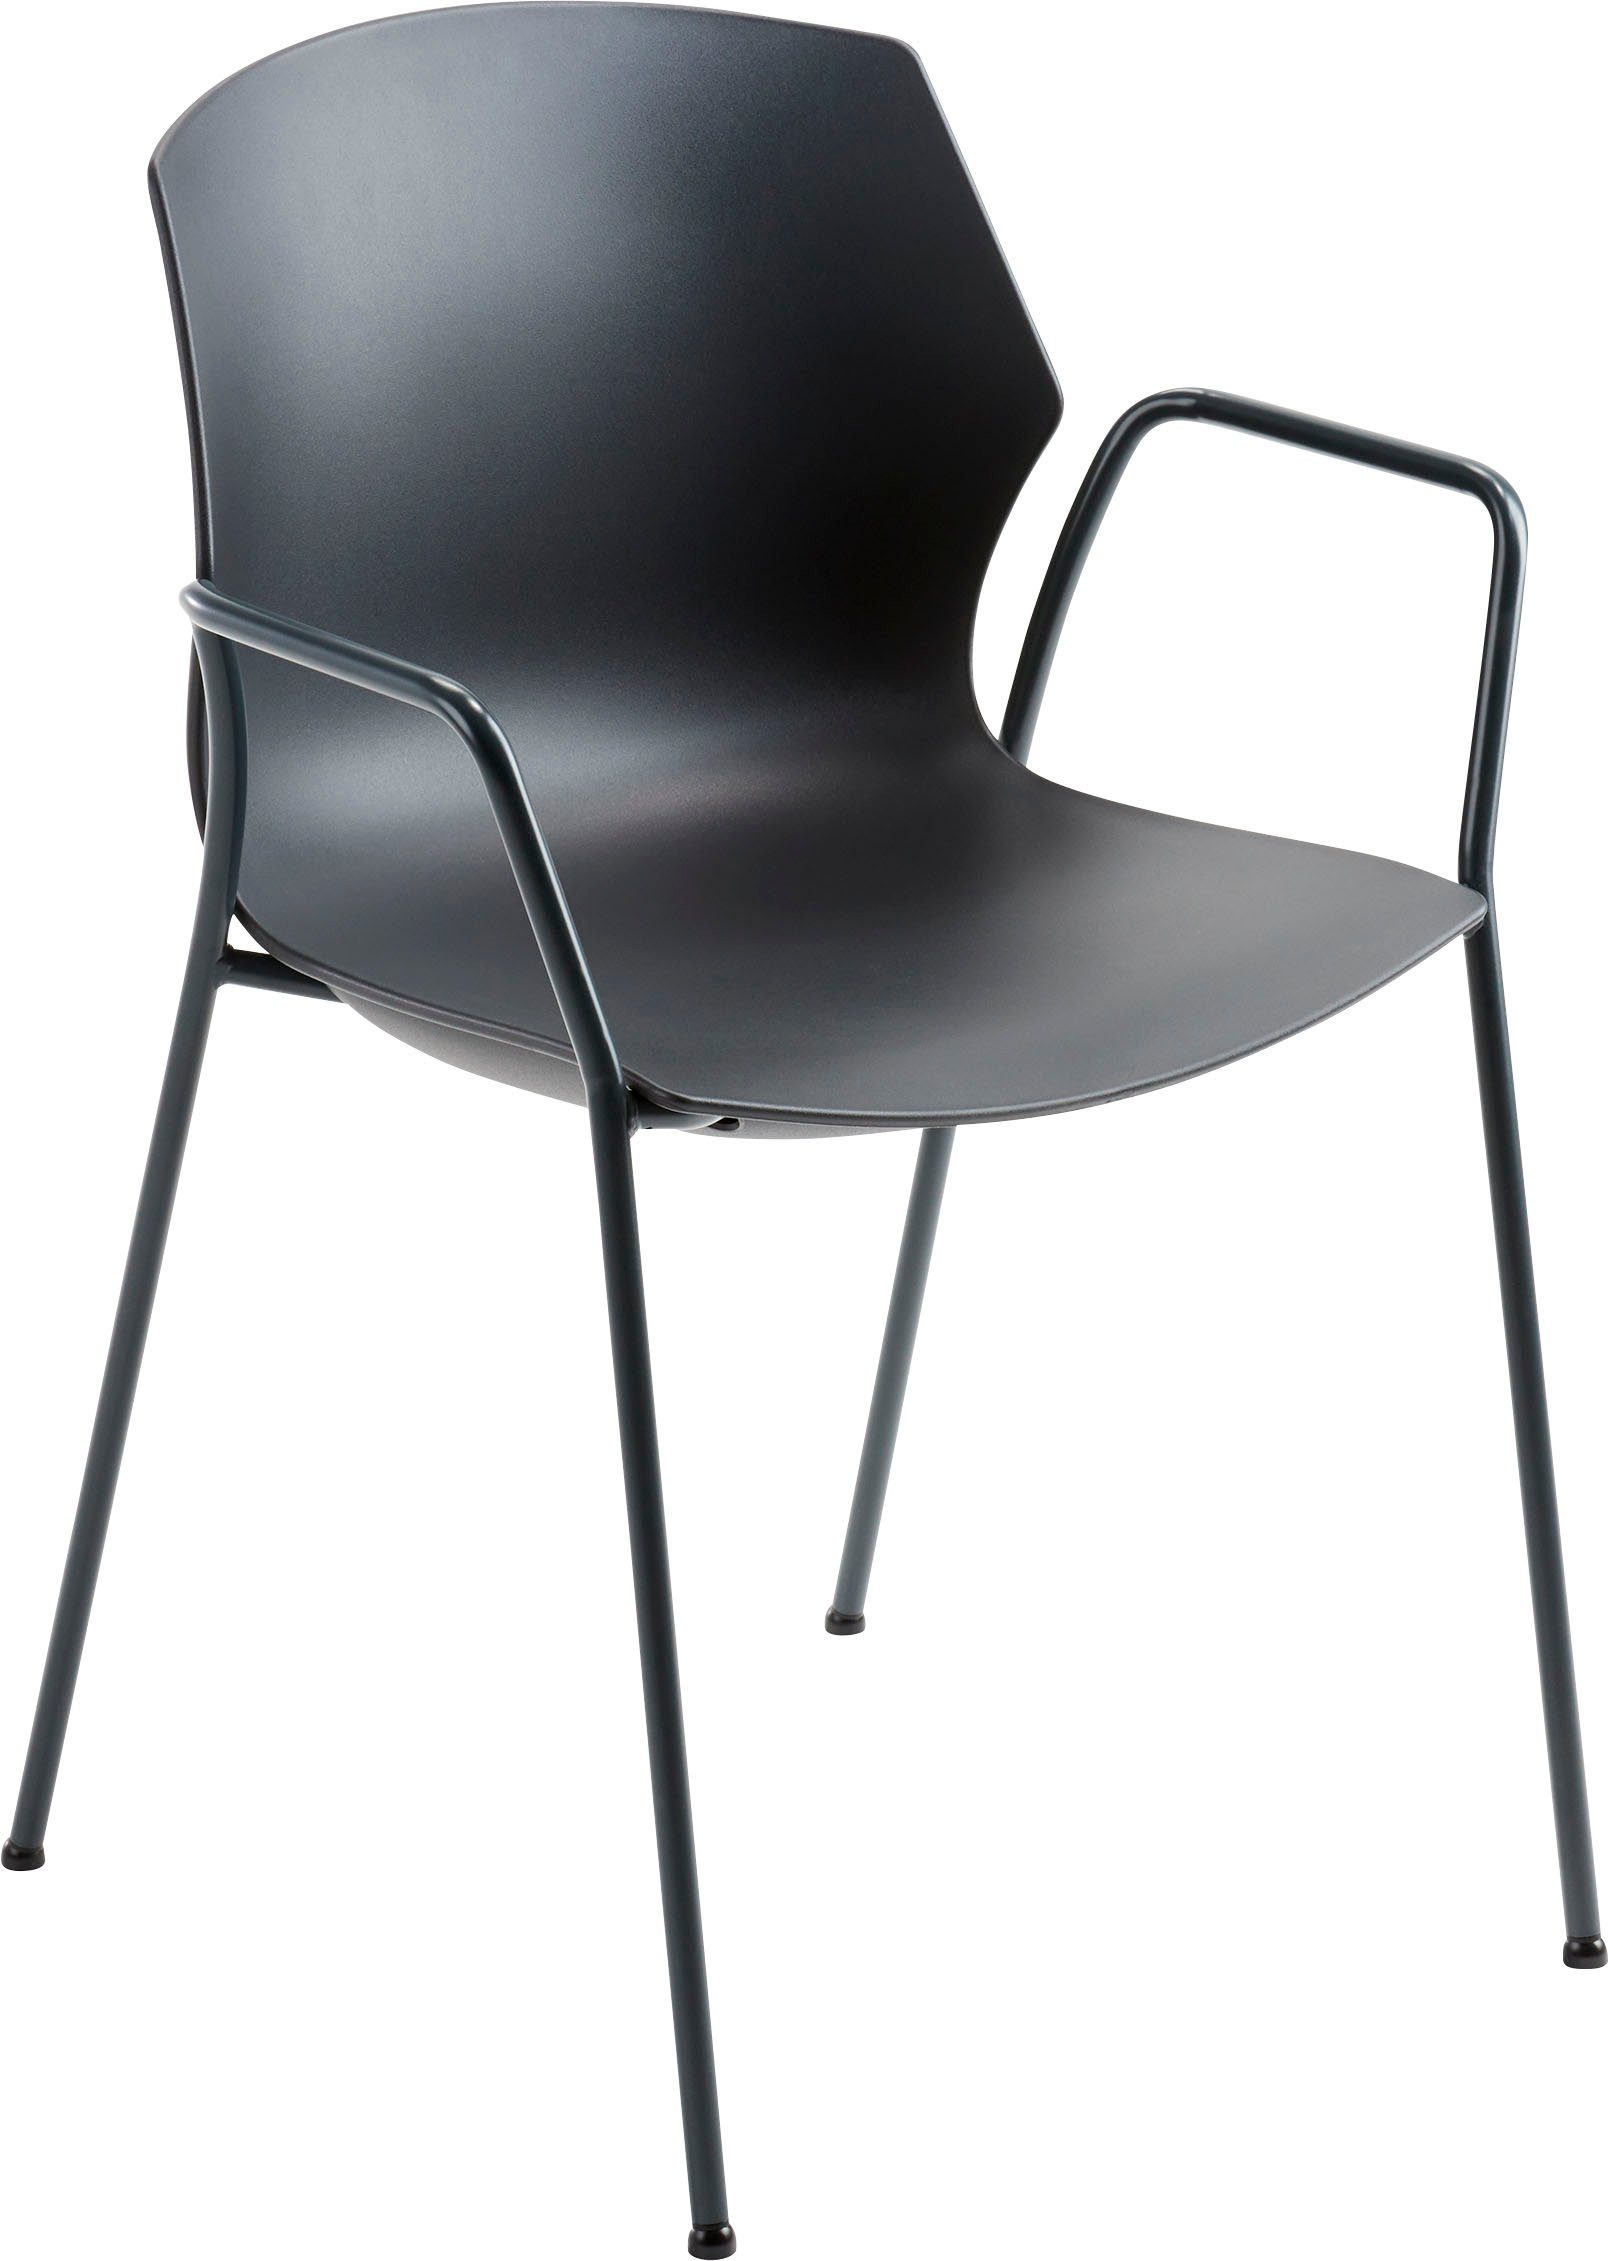 Mayer Sitzmöbel Stapelstuhl Stapelstuhl Sitzschale hohem Komfort stapelbar, mit myPRIMO